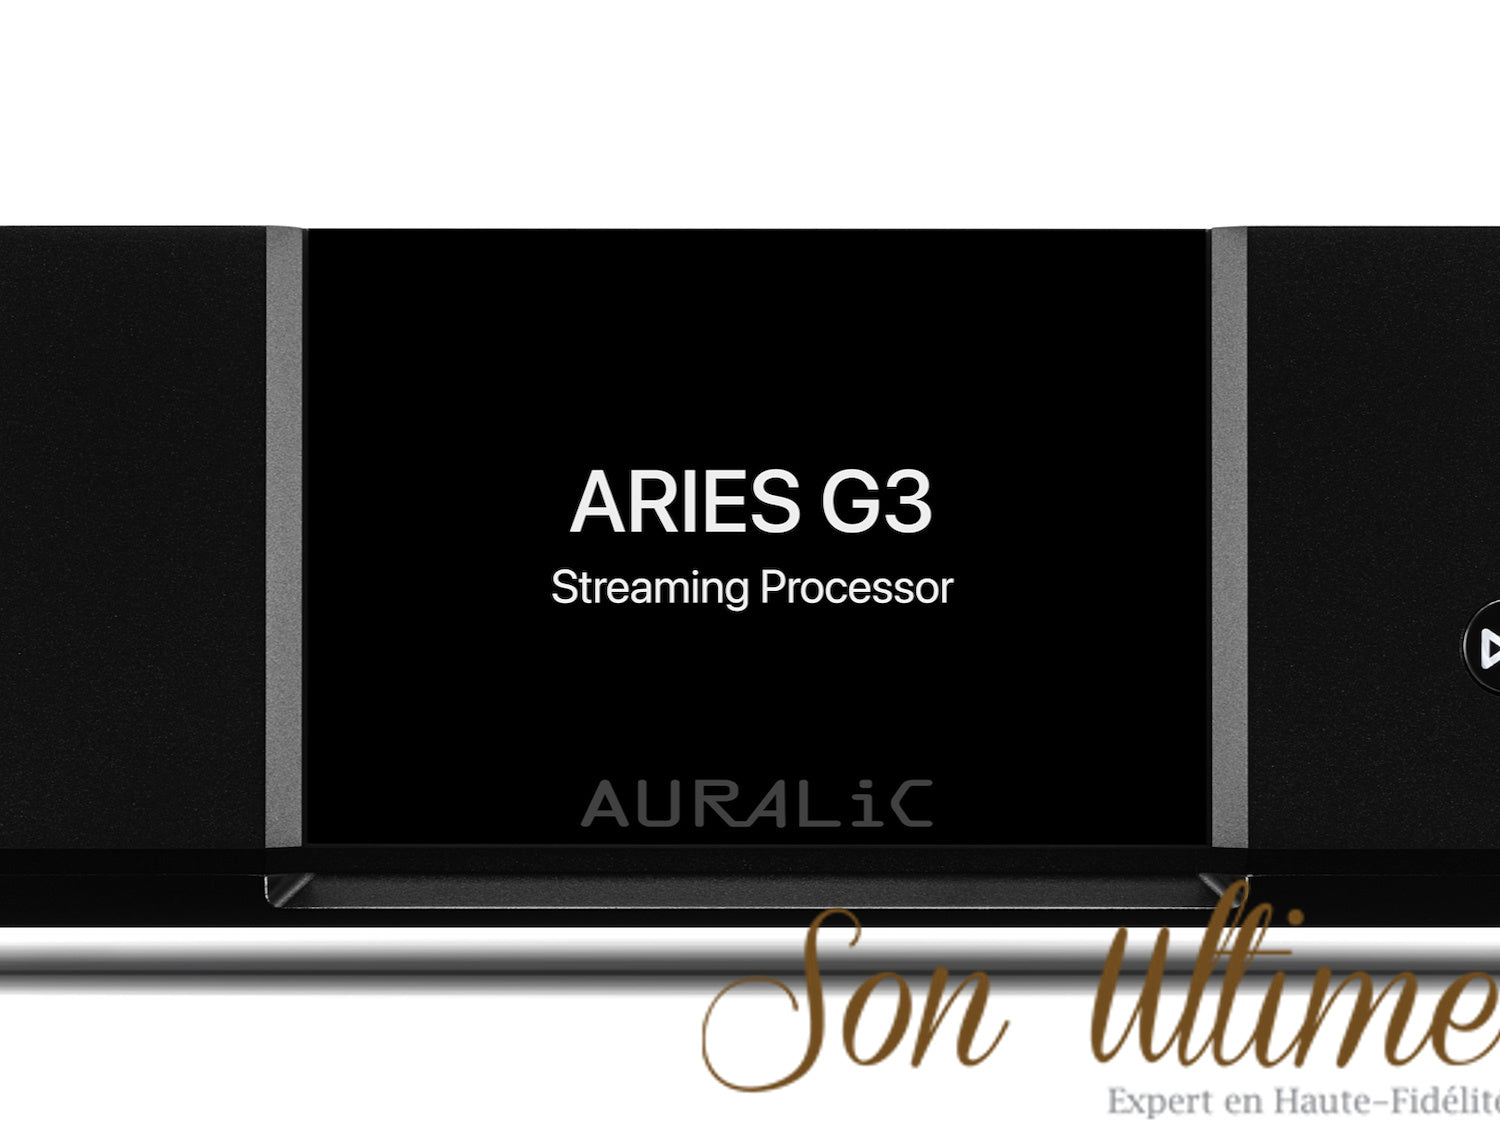 Aries G3